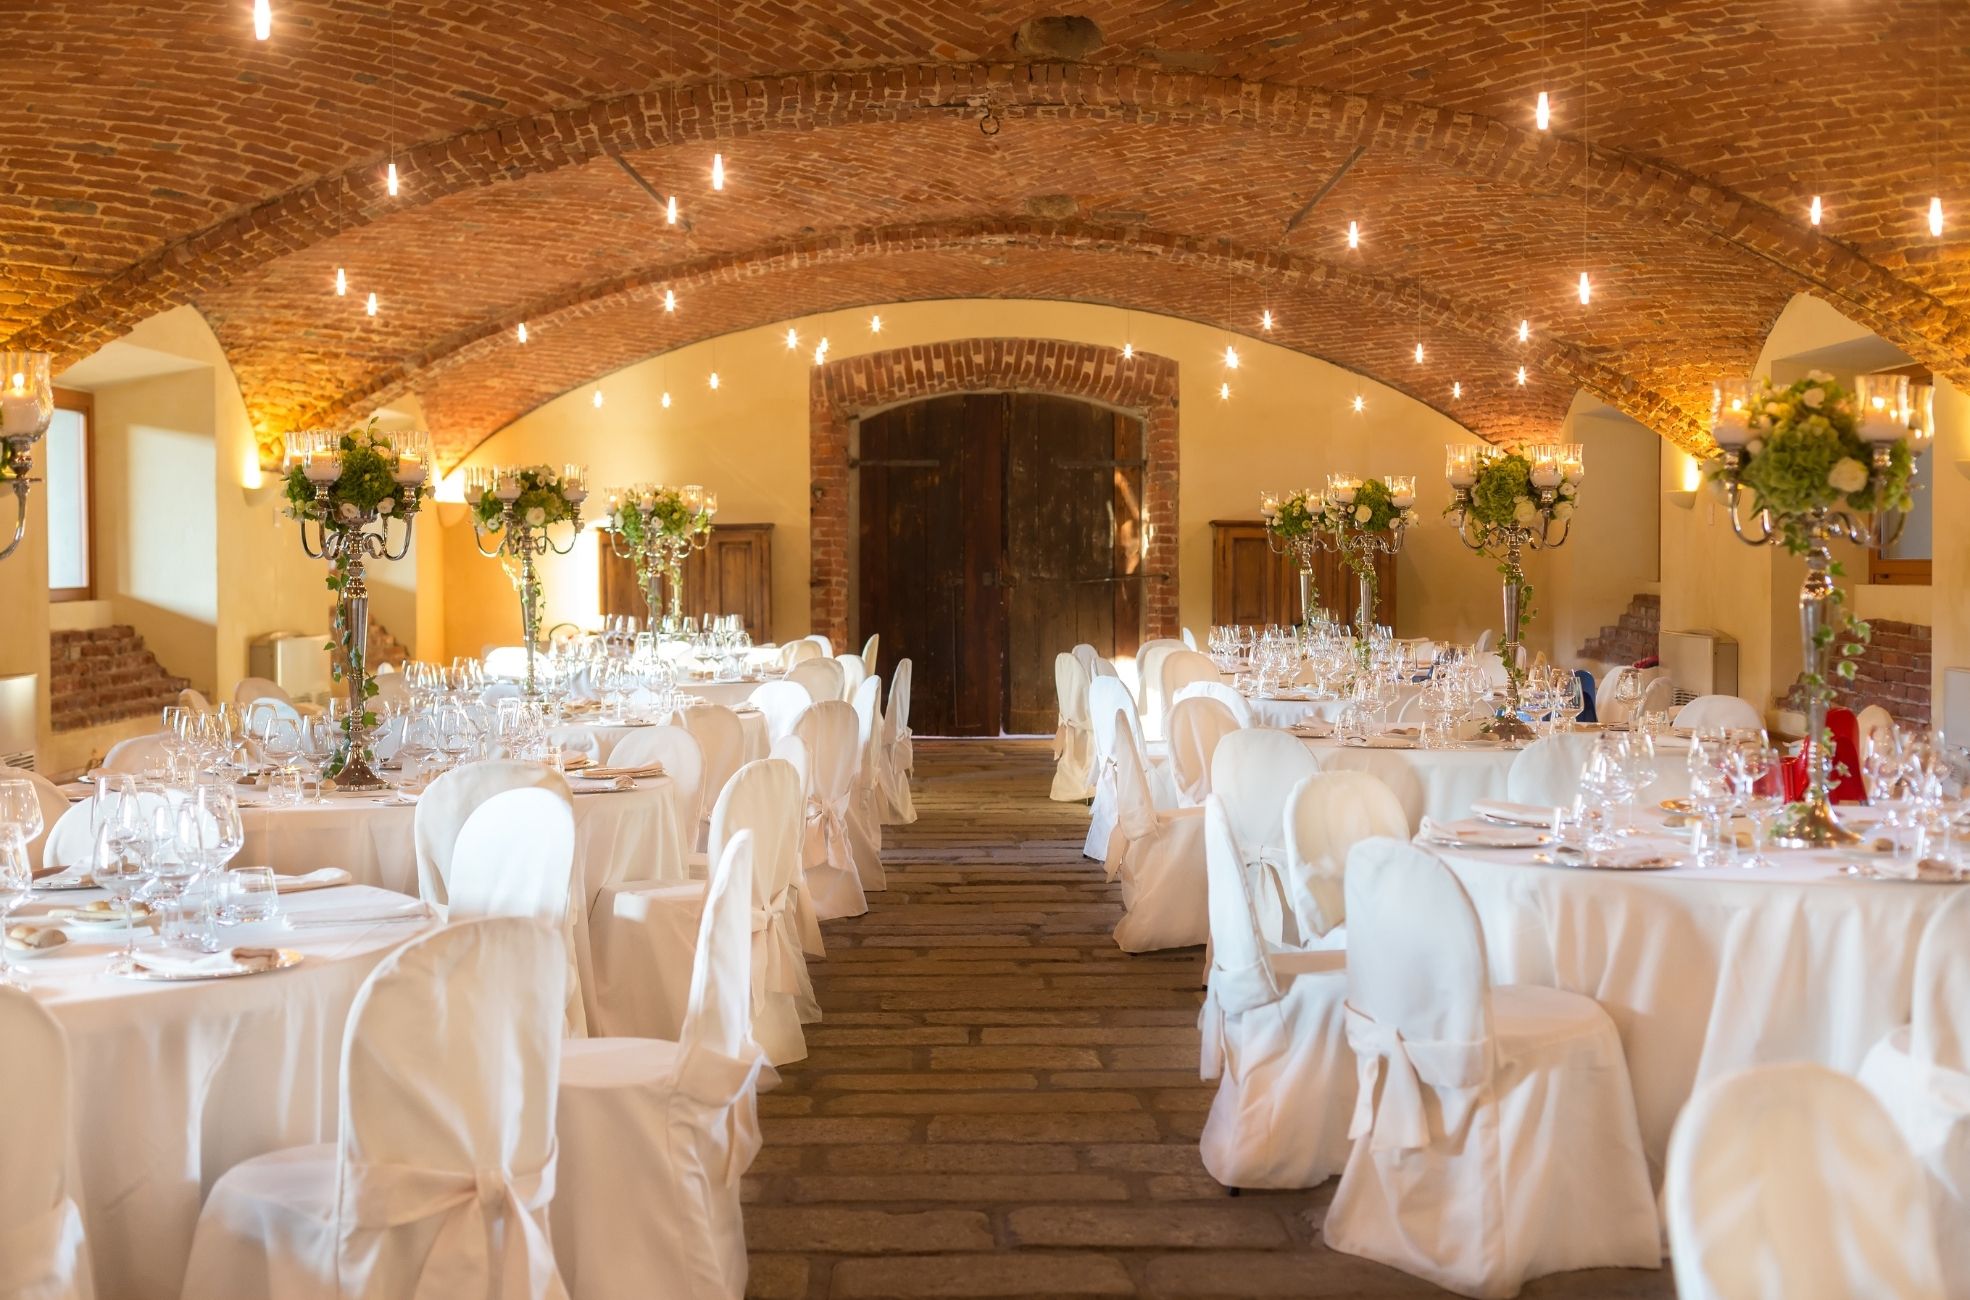 Underground Cellar Wedding Reception Seating